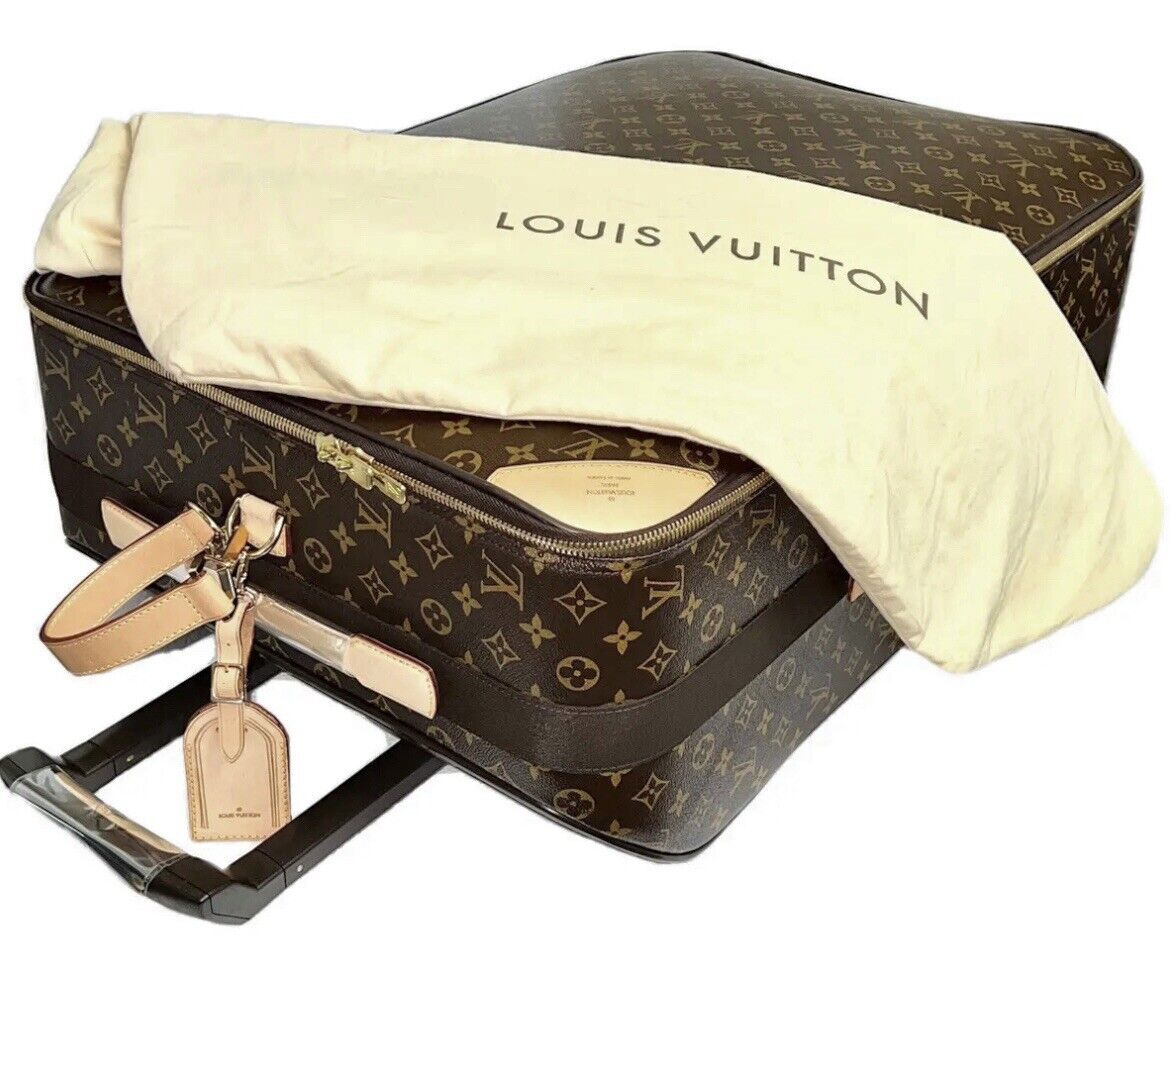 Louis Vuitton Pegase 70 Rolling Suitcase Bag w/ Dustbag Discontinued SP1002 🩵